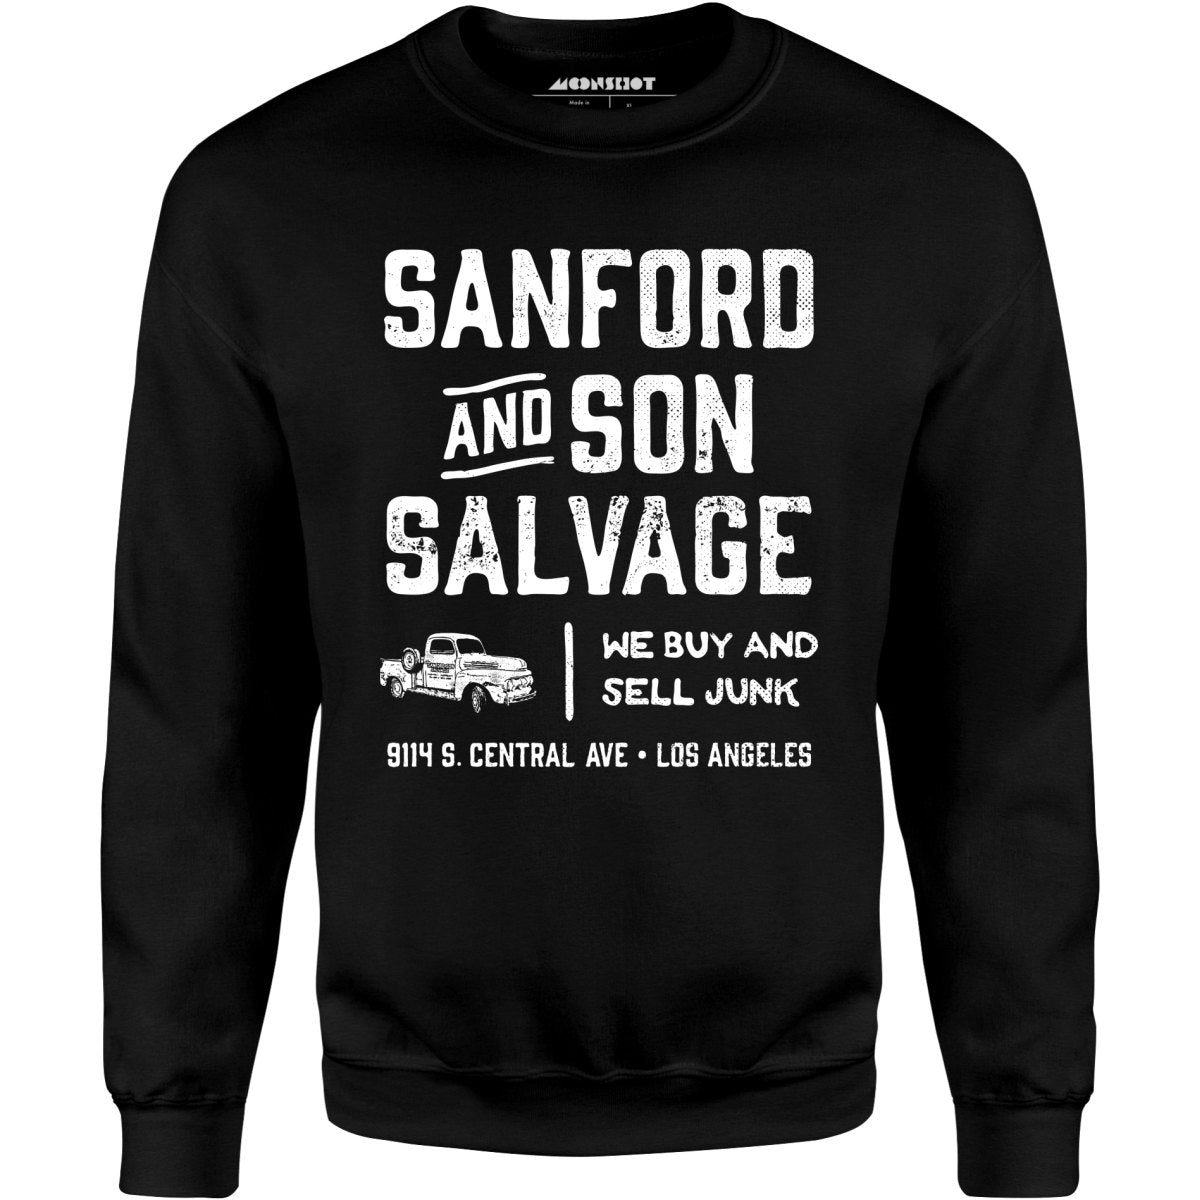 Sanford and Son Salvage - Unisex Sweatshirt